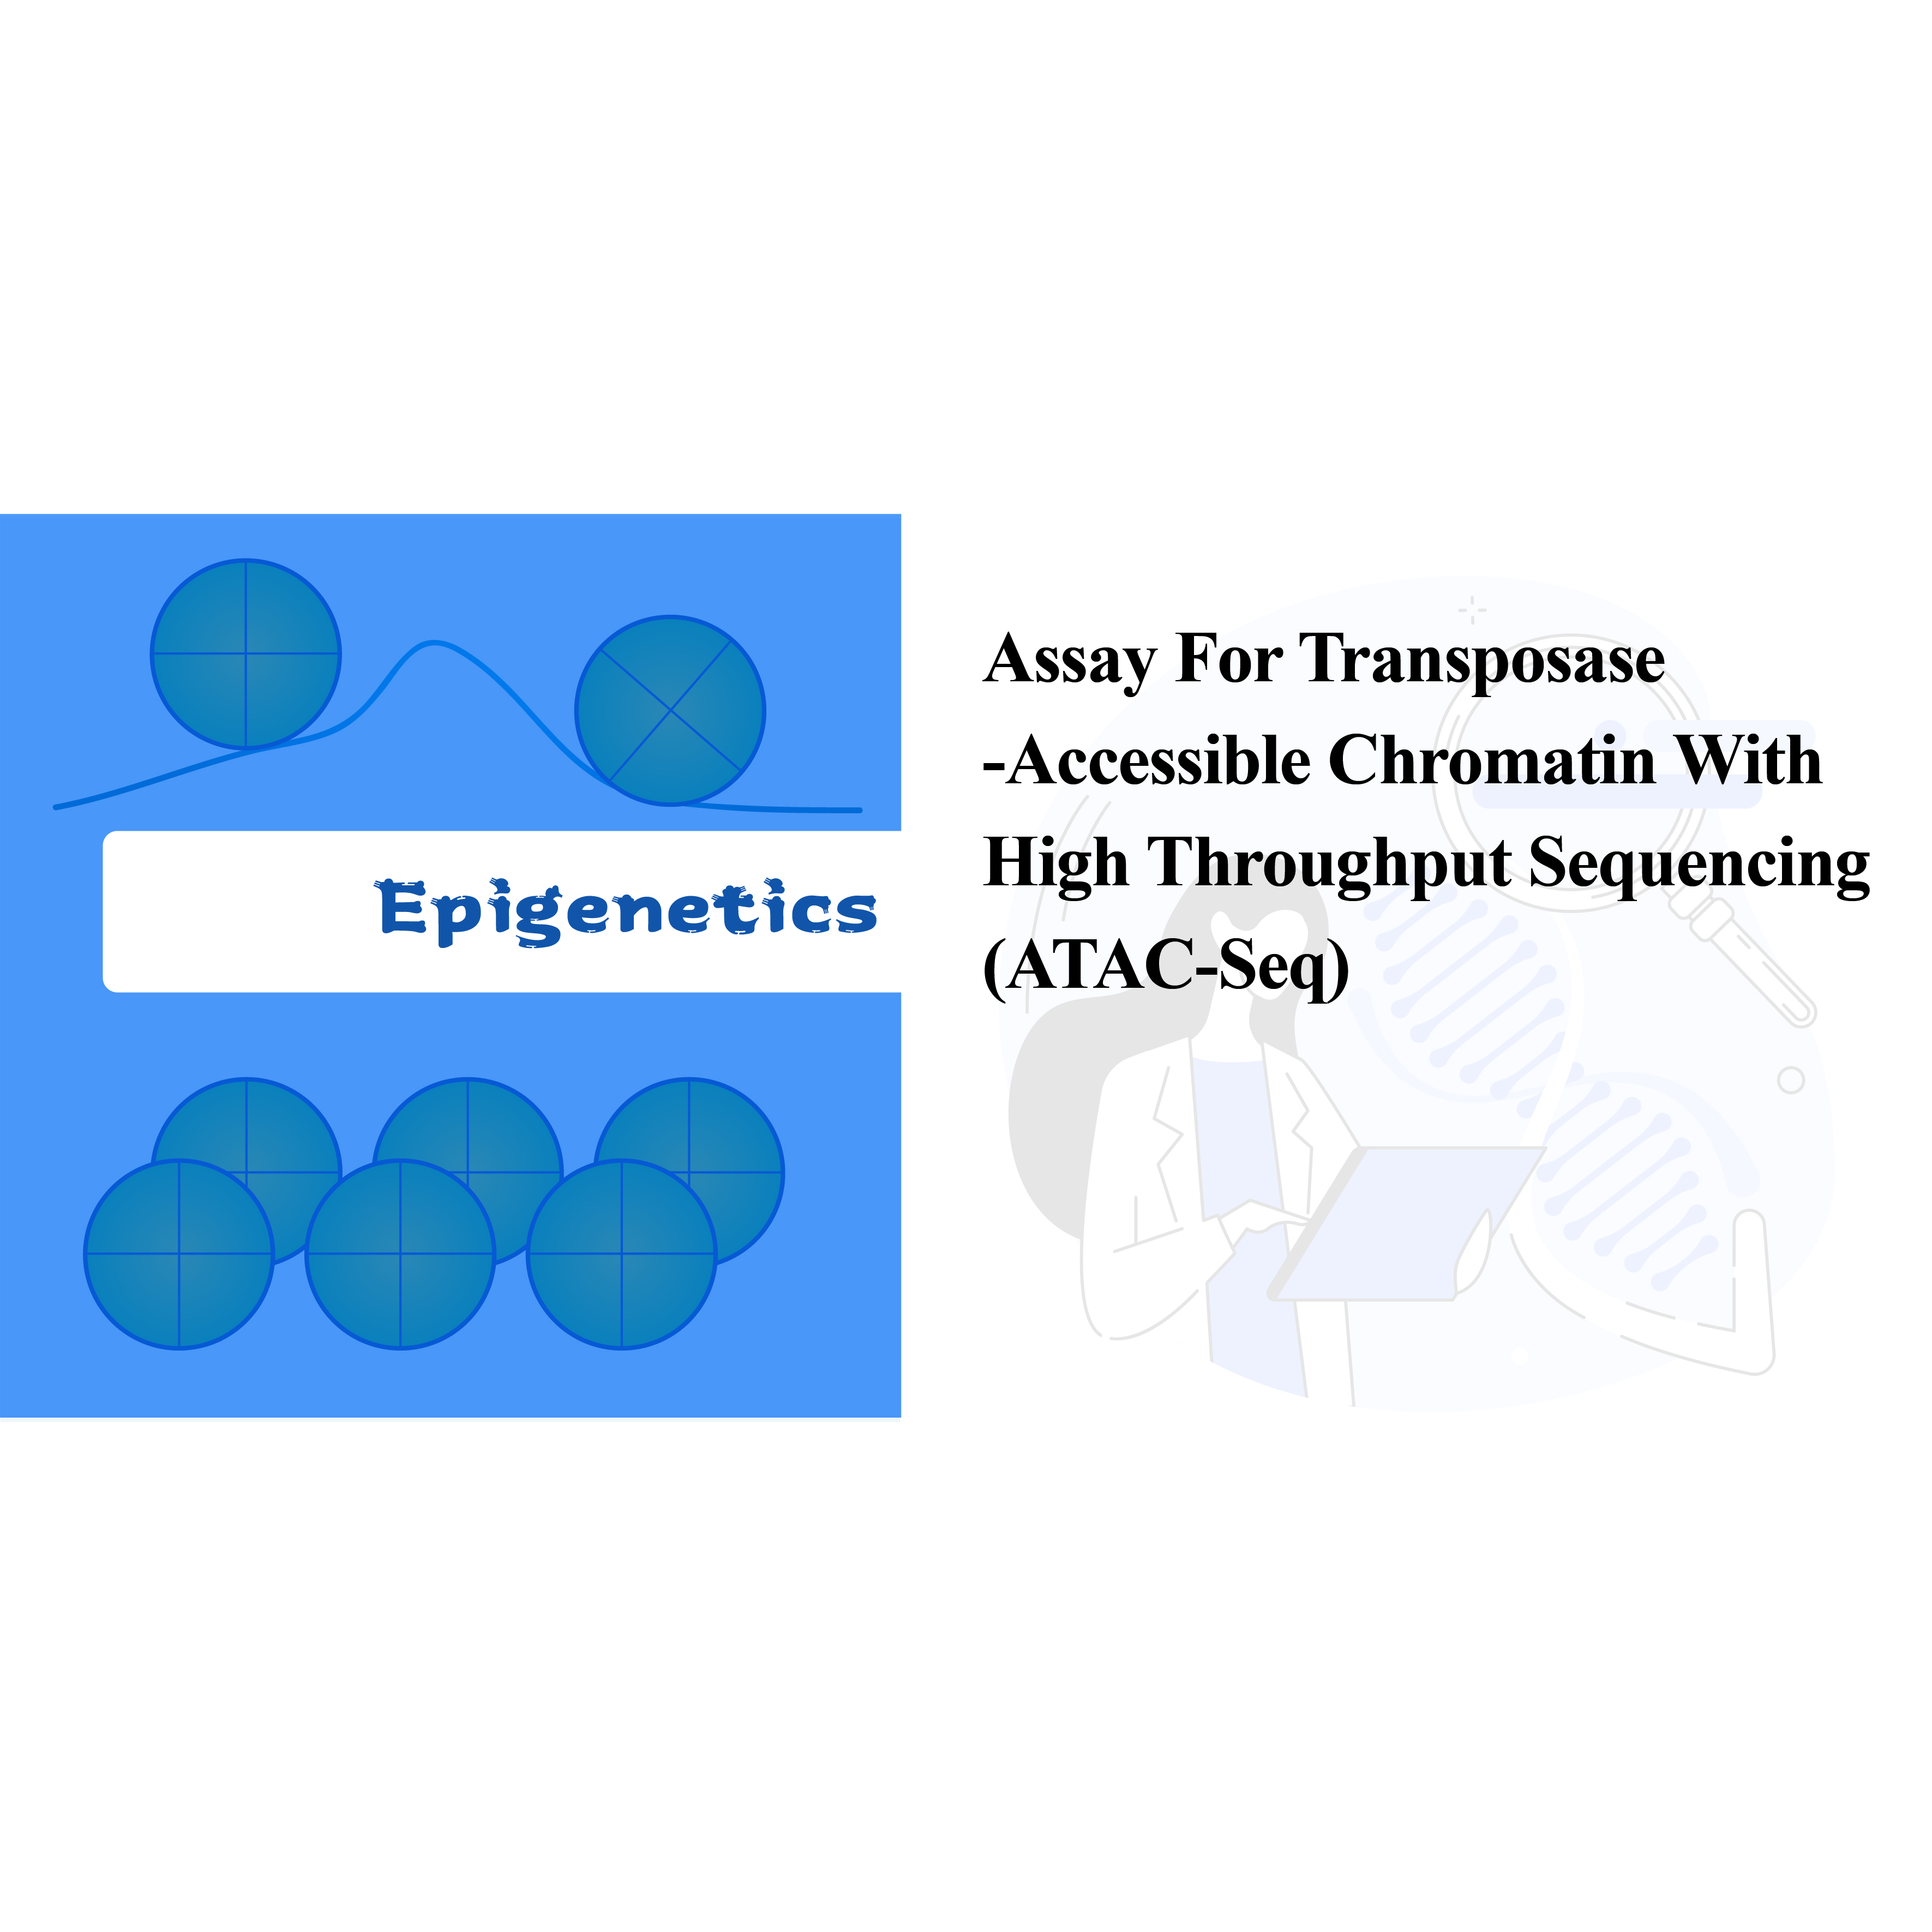 Ujian untuk Kromatin Boleh Akses Transposase dengan Penjujukan Throughput Tinggi (ATAC-seq)